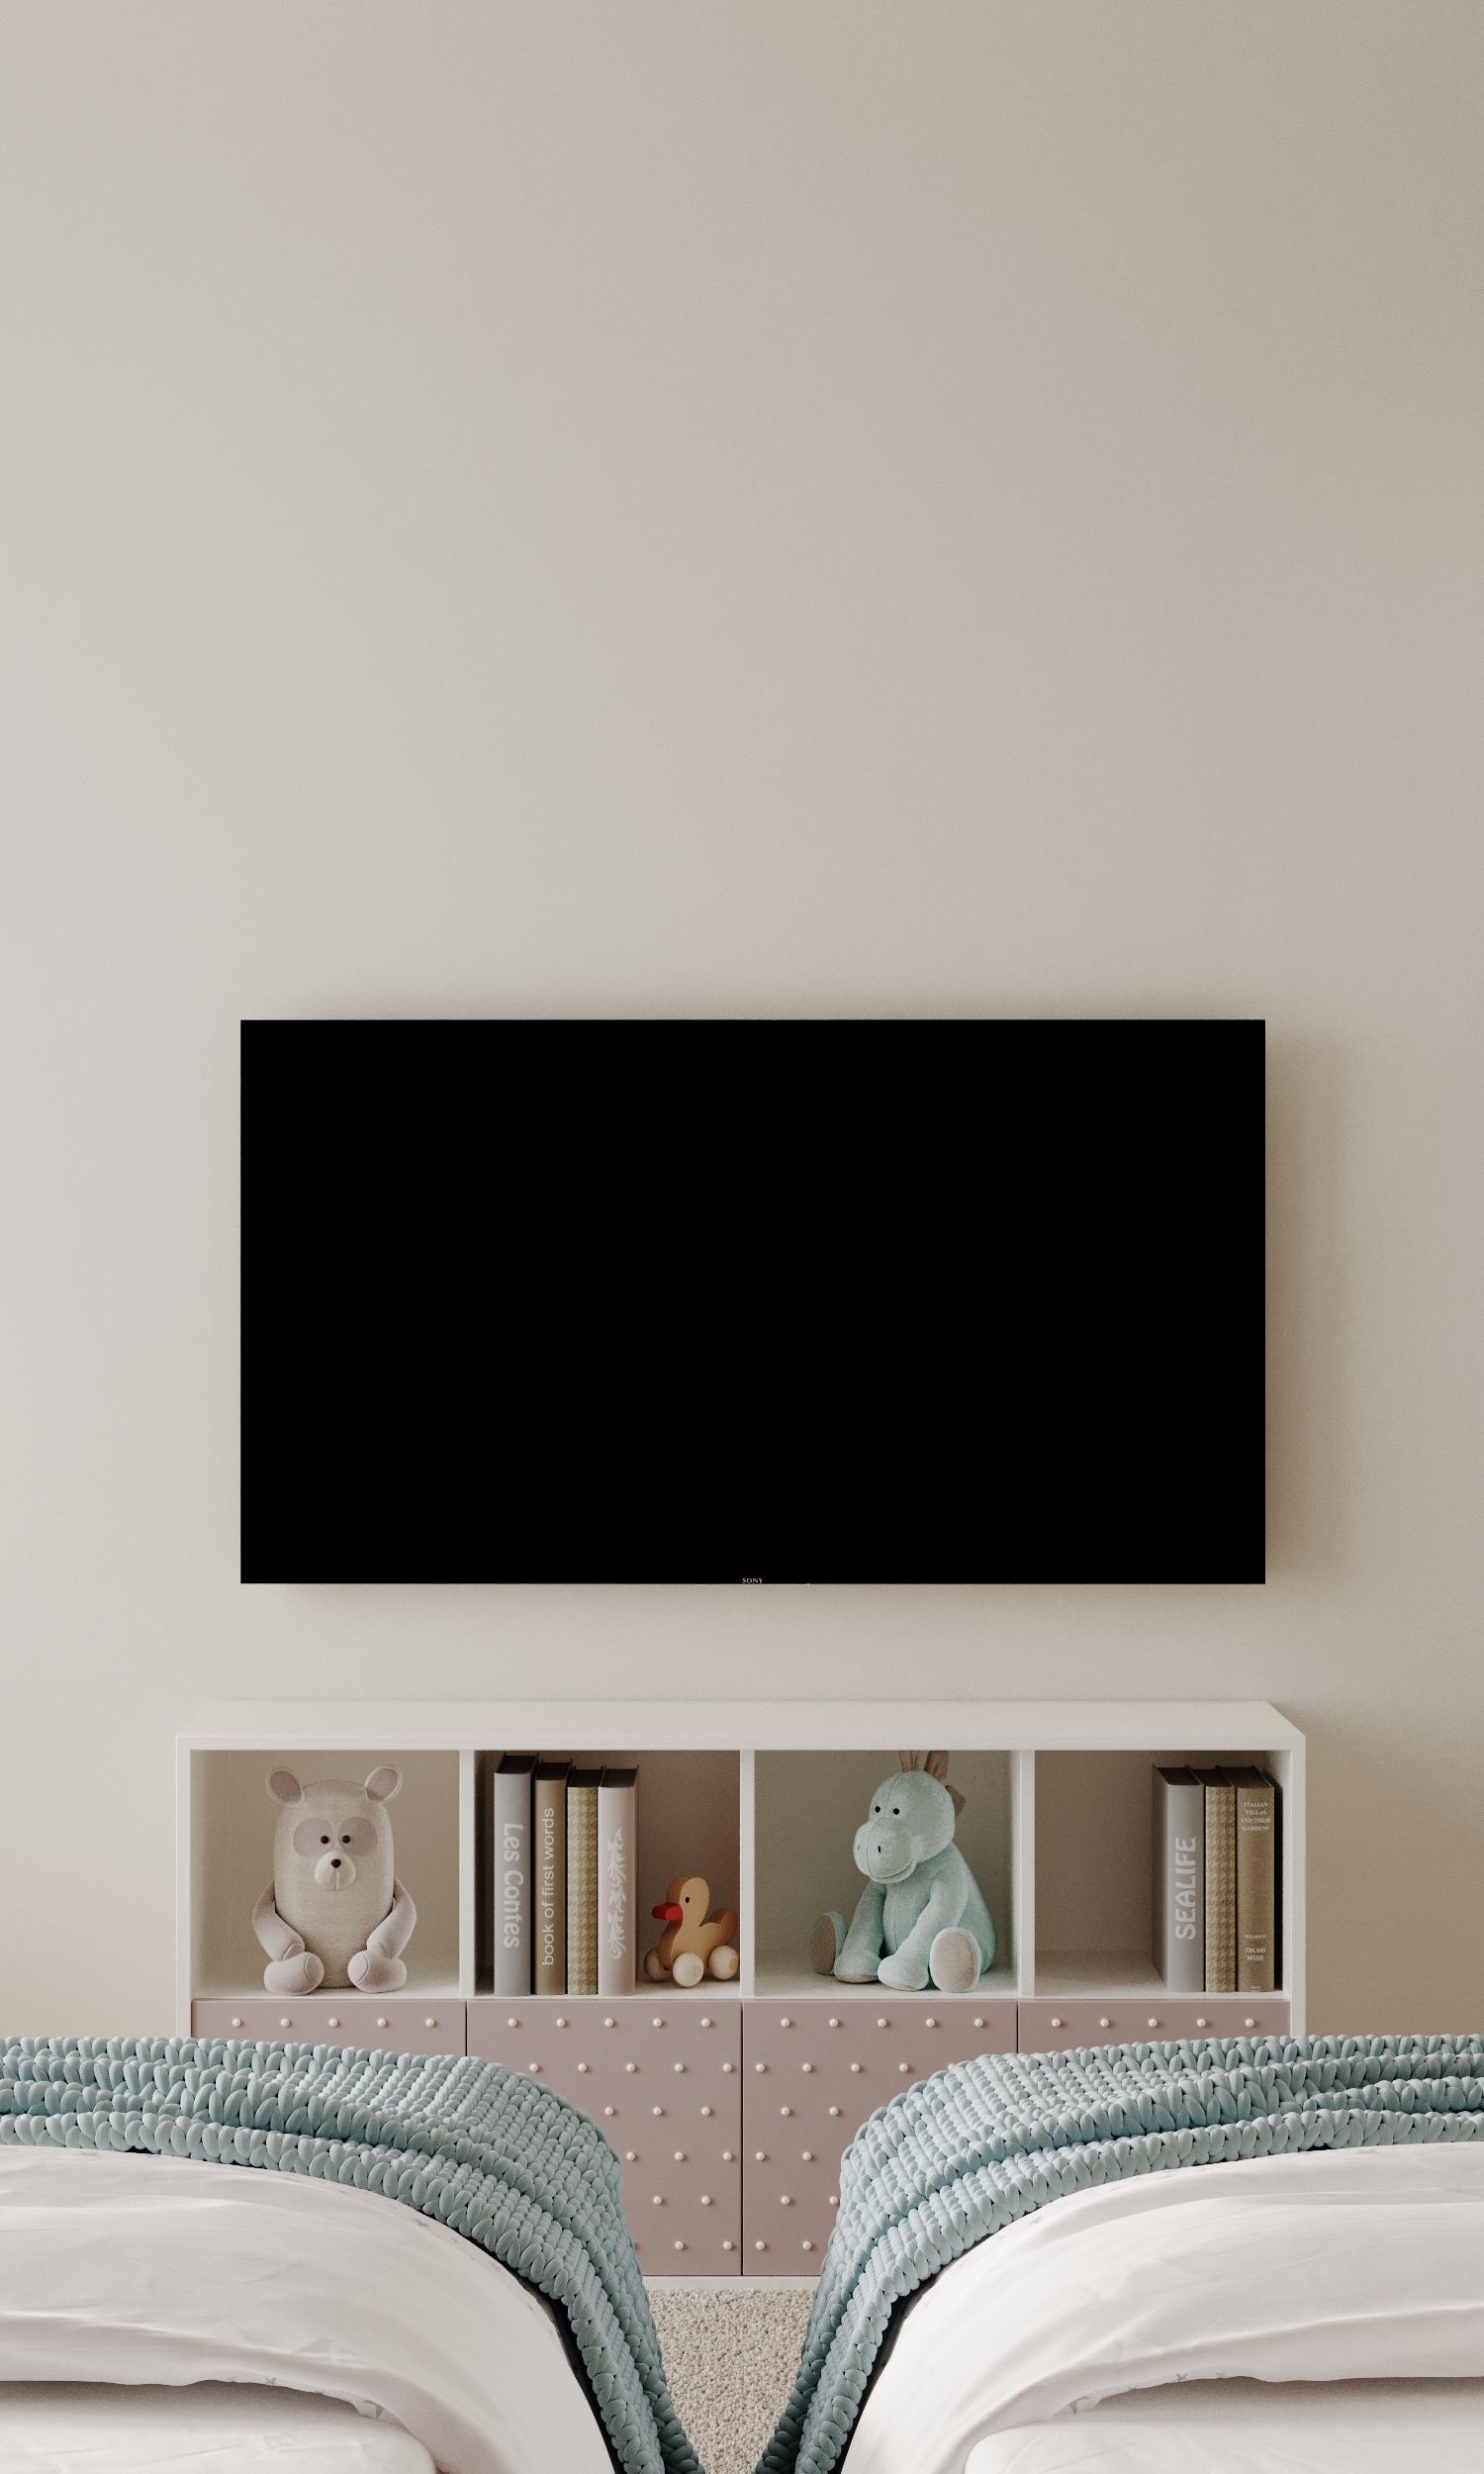 Интерьер cтеной с телевизором и телевизором на стене